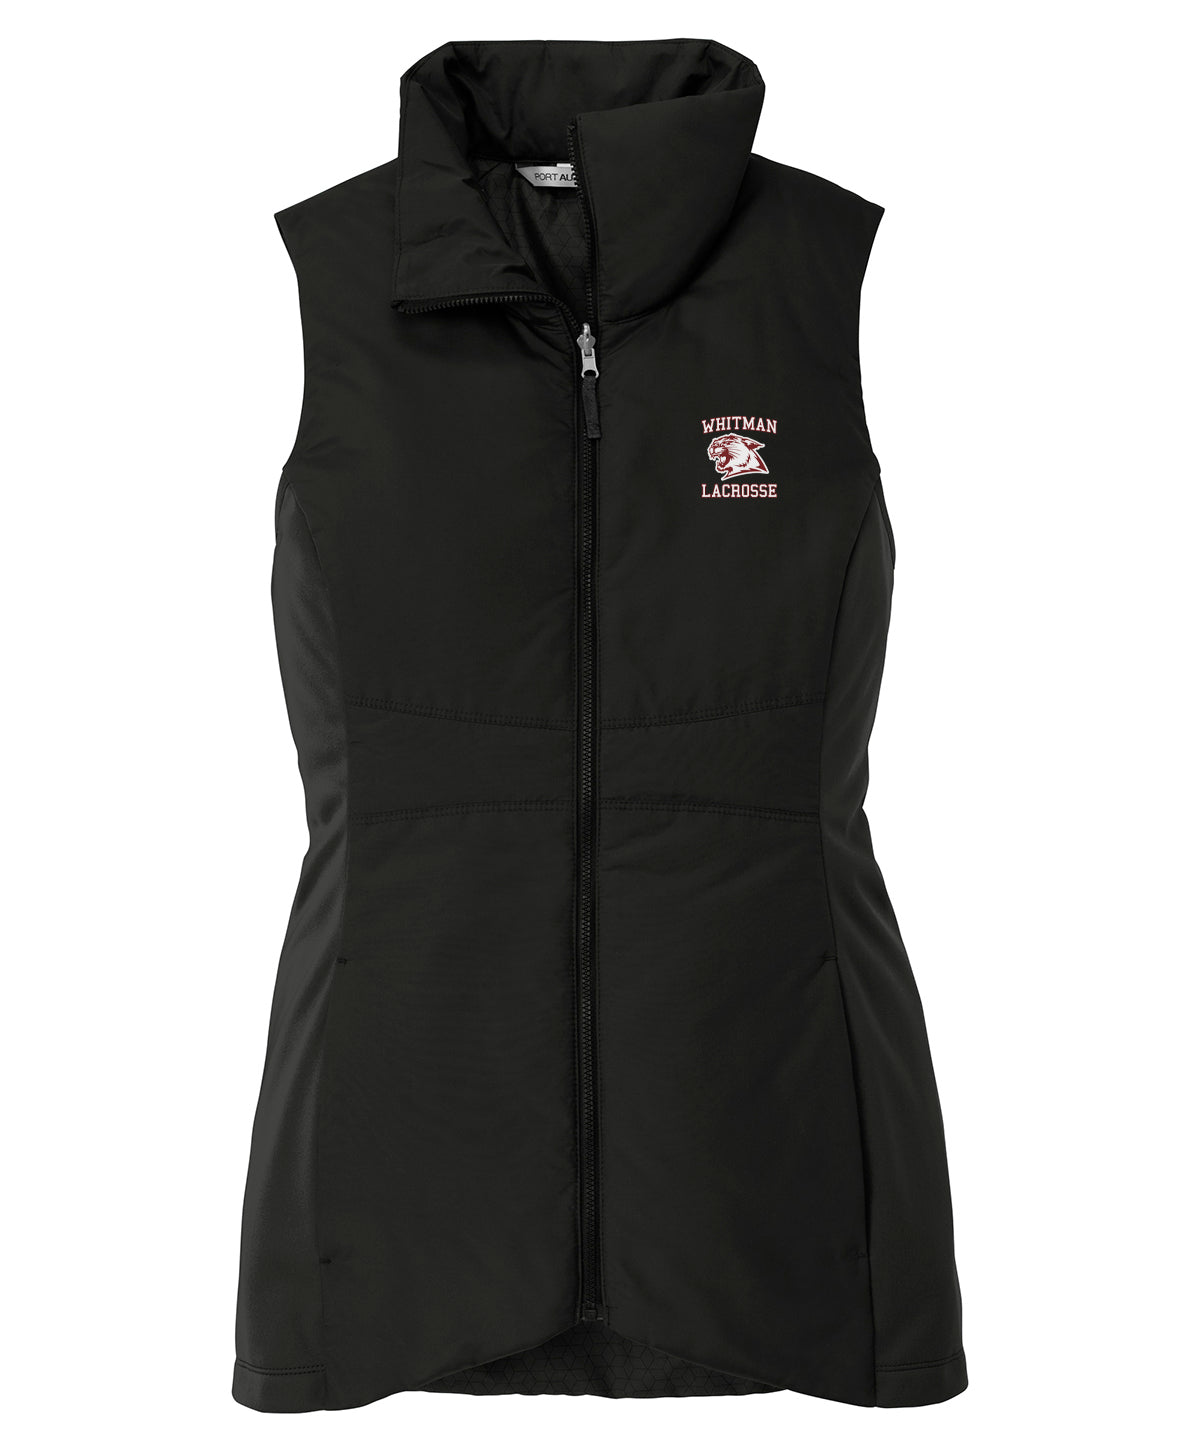 Whitman Lacrosse Women's Vest